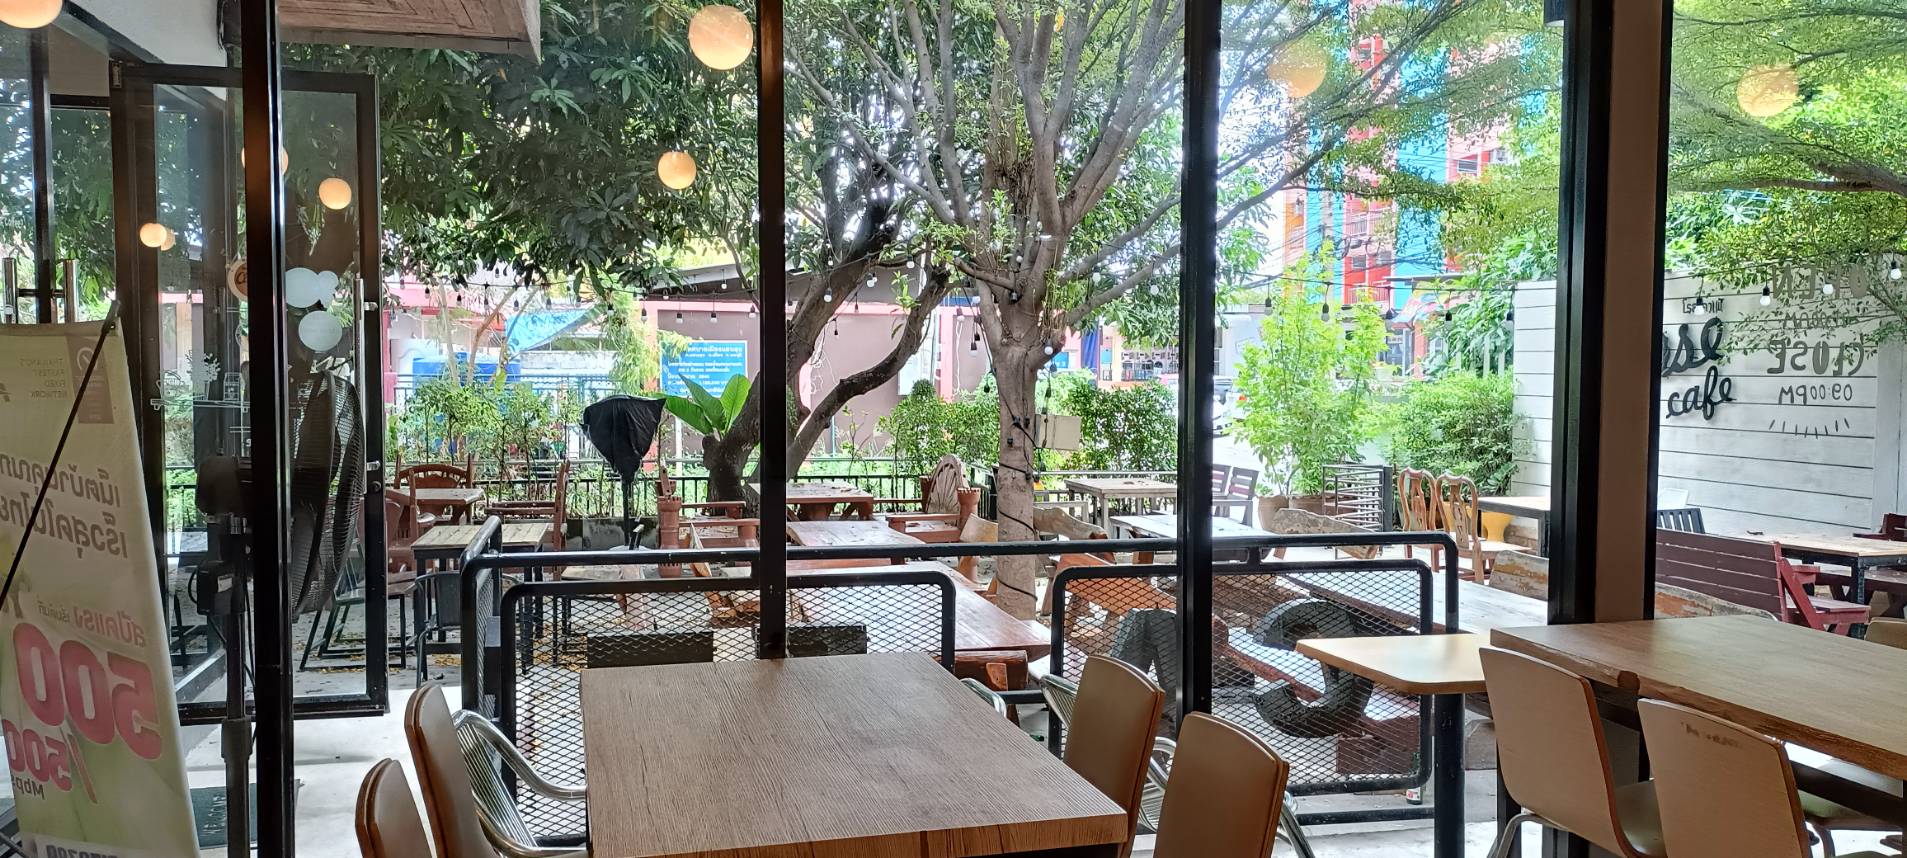 ขายร้านกาแฟพร้อมอุปกรณ์ครบ พร้อมห้องเช่า 6 ห้อง ทำเลดี ตำบลแสนสุข อำเภอเมืองชลบุรี ชลบุรี